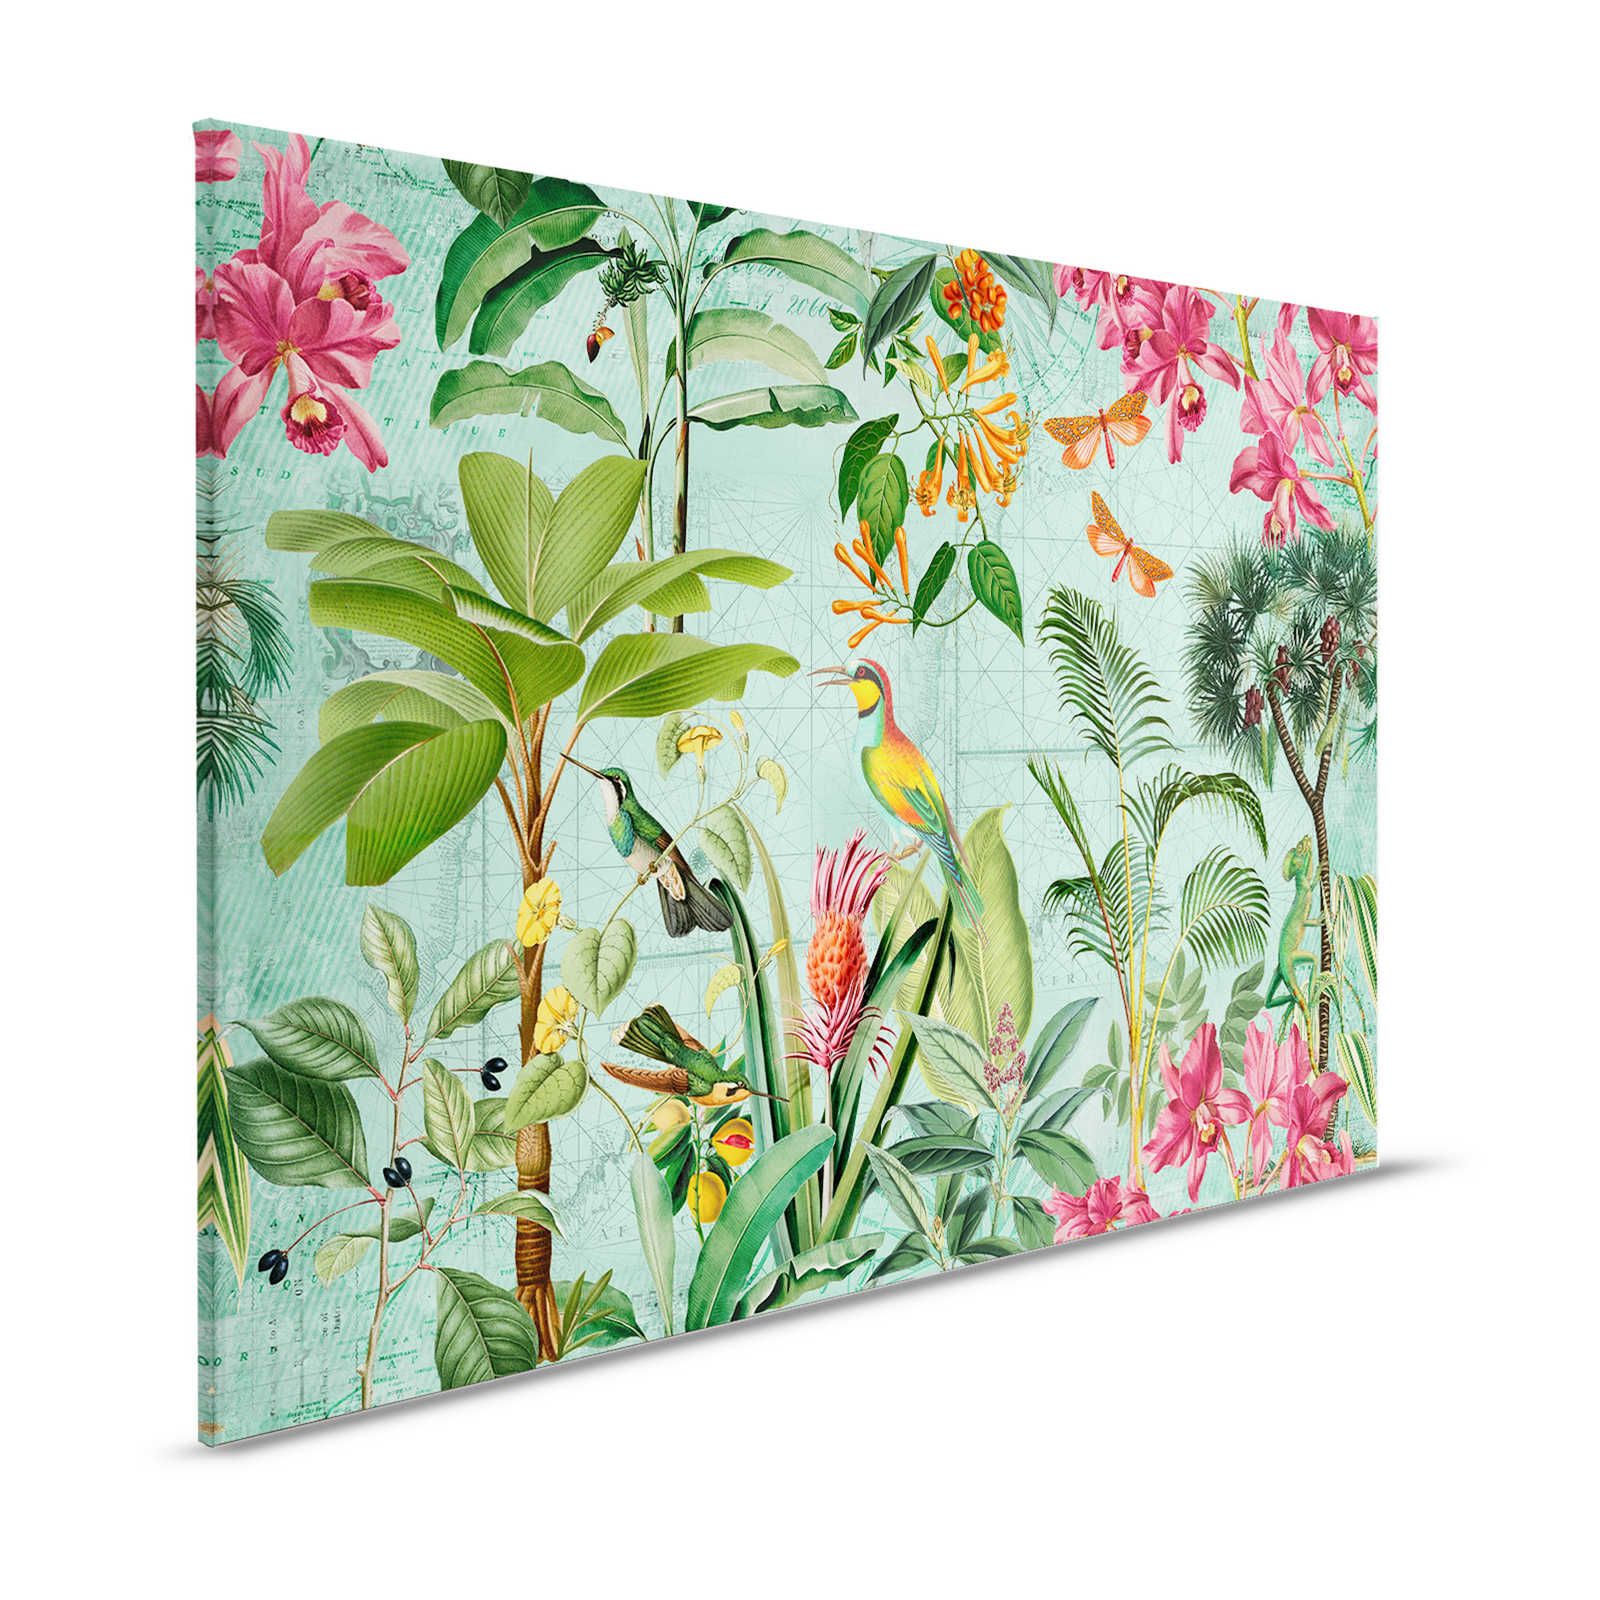 Tela colorata della giungla con alberi, fiori e animali - 1,20 m x 0,80 m
